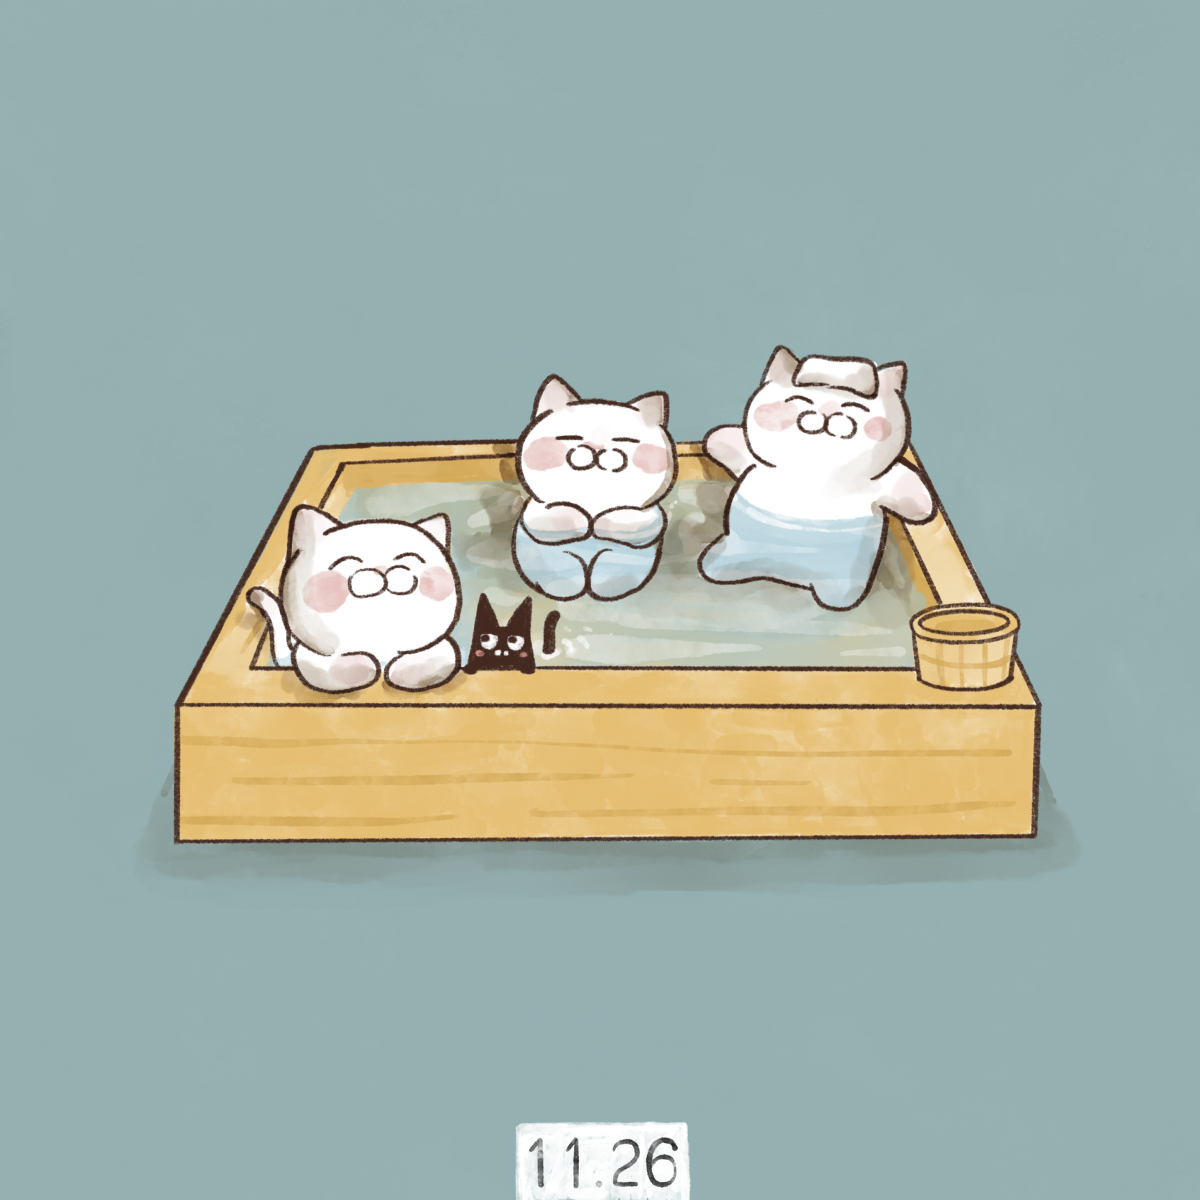 「11月26日【いい風呂の日】 い(1)い(1)ふ(2)ろ(6)の語呂合せで、日本」|大和猫のイラスト